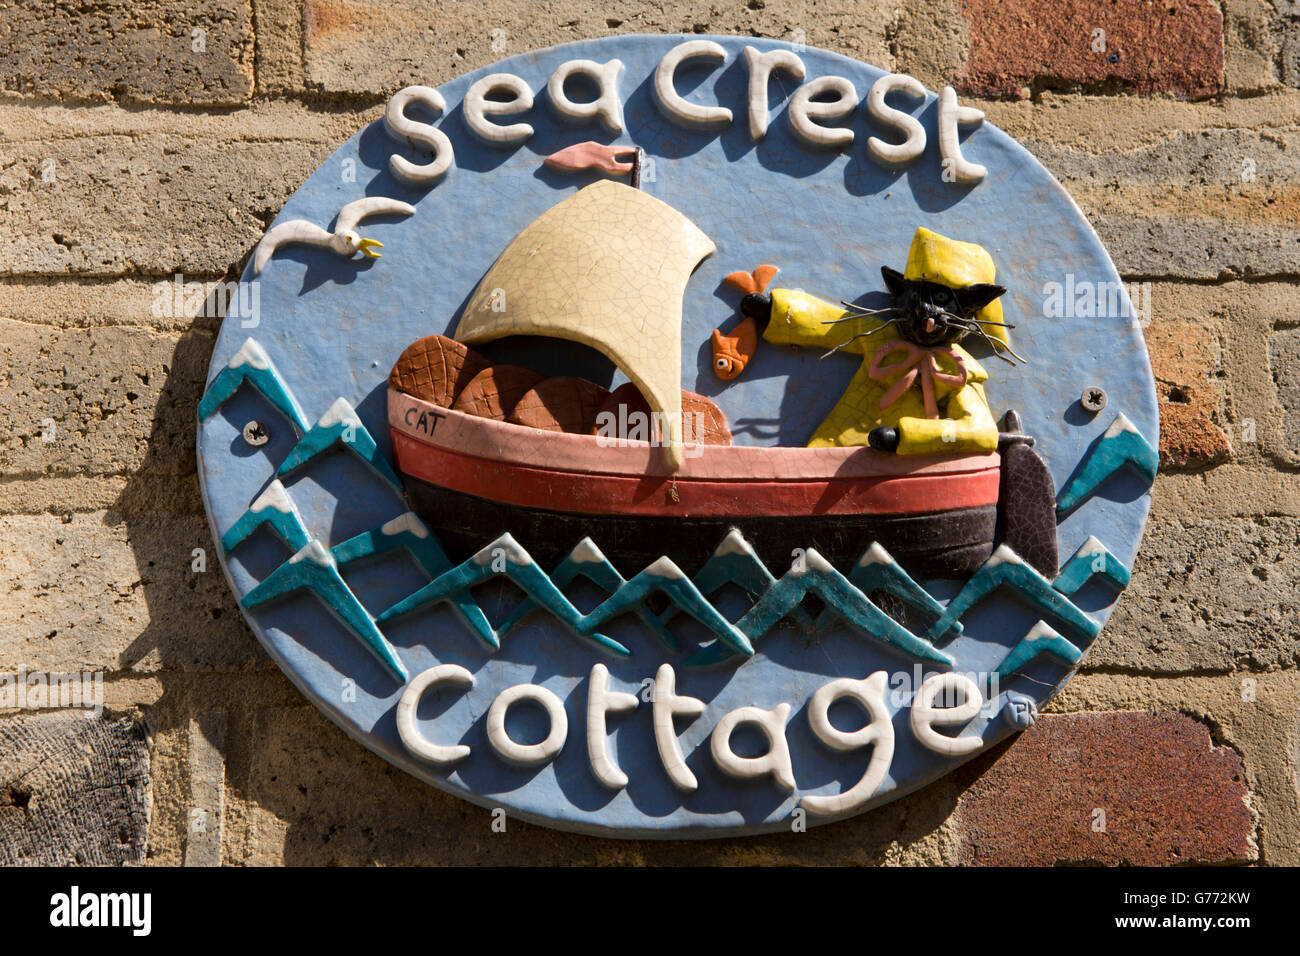 Großbritannien, England, Yorkshire, Staithes, High Street, Sea Crest Cottage, handgefertigte Keramik Hauszeichen Stockfoto